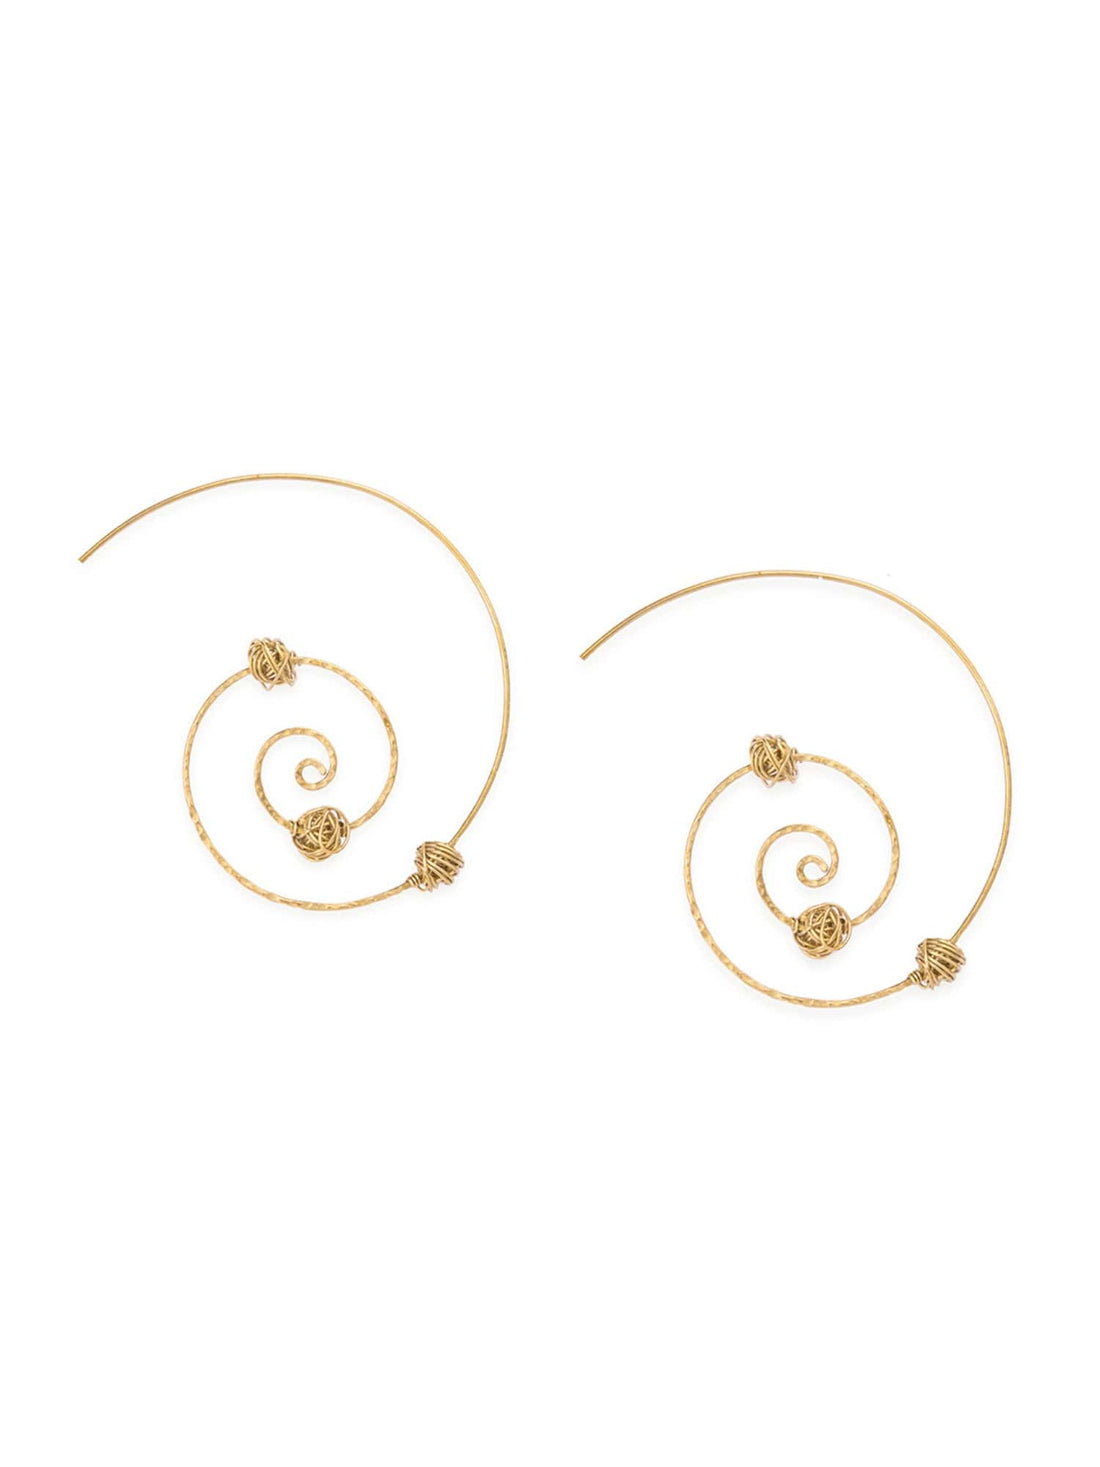 Festive Wear Hoops Earrings - Minimal Gold-Plated Brass Earrings By Studio One Love